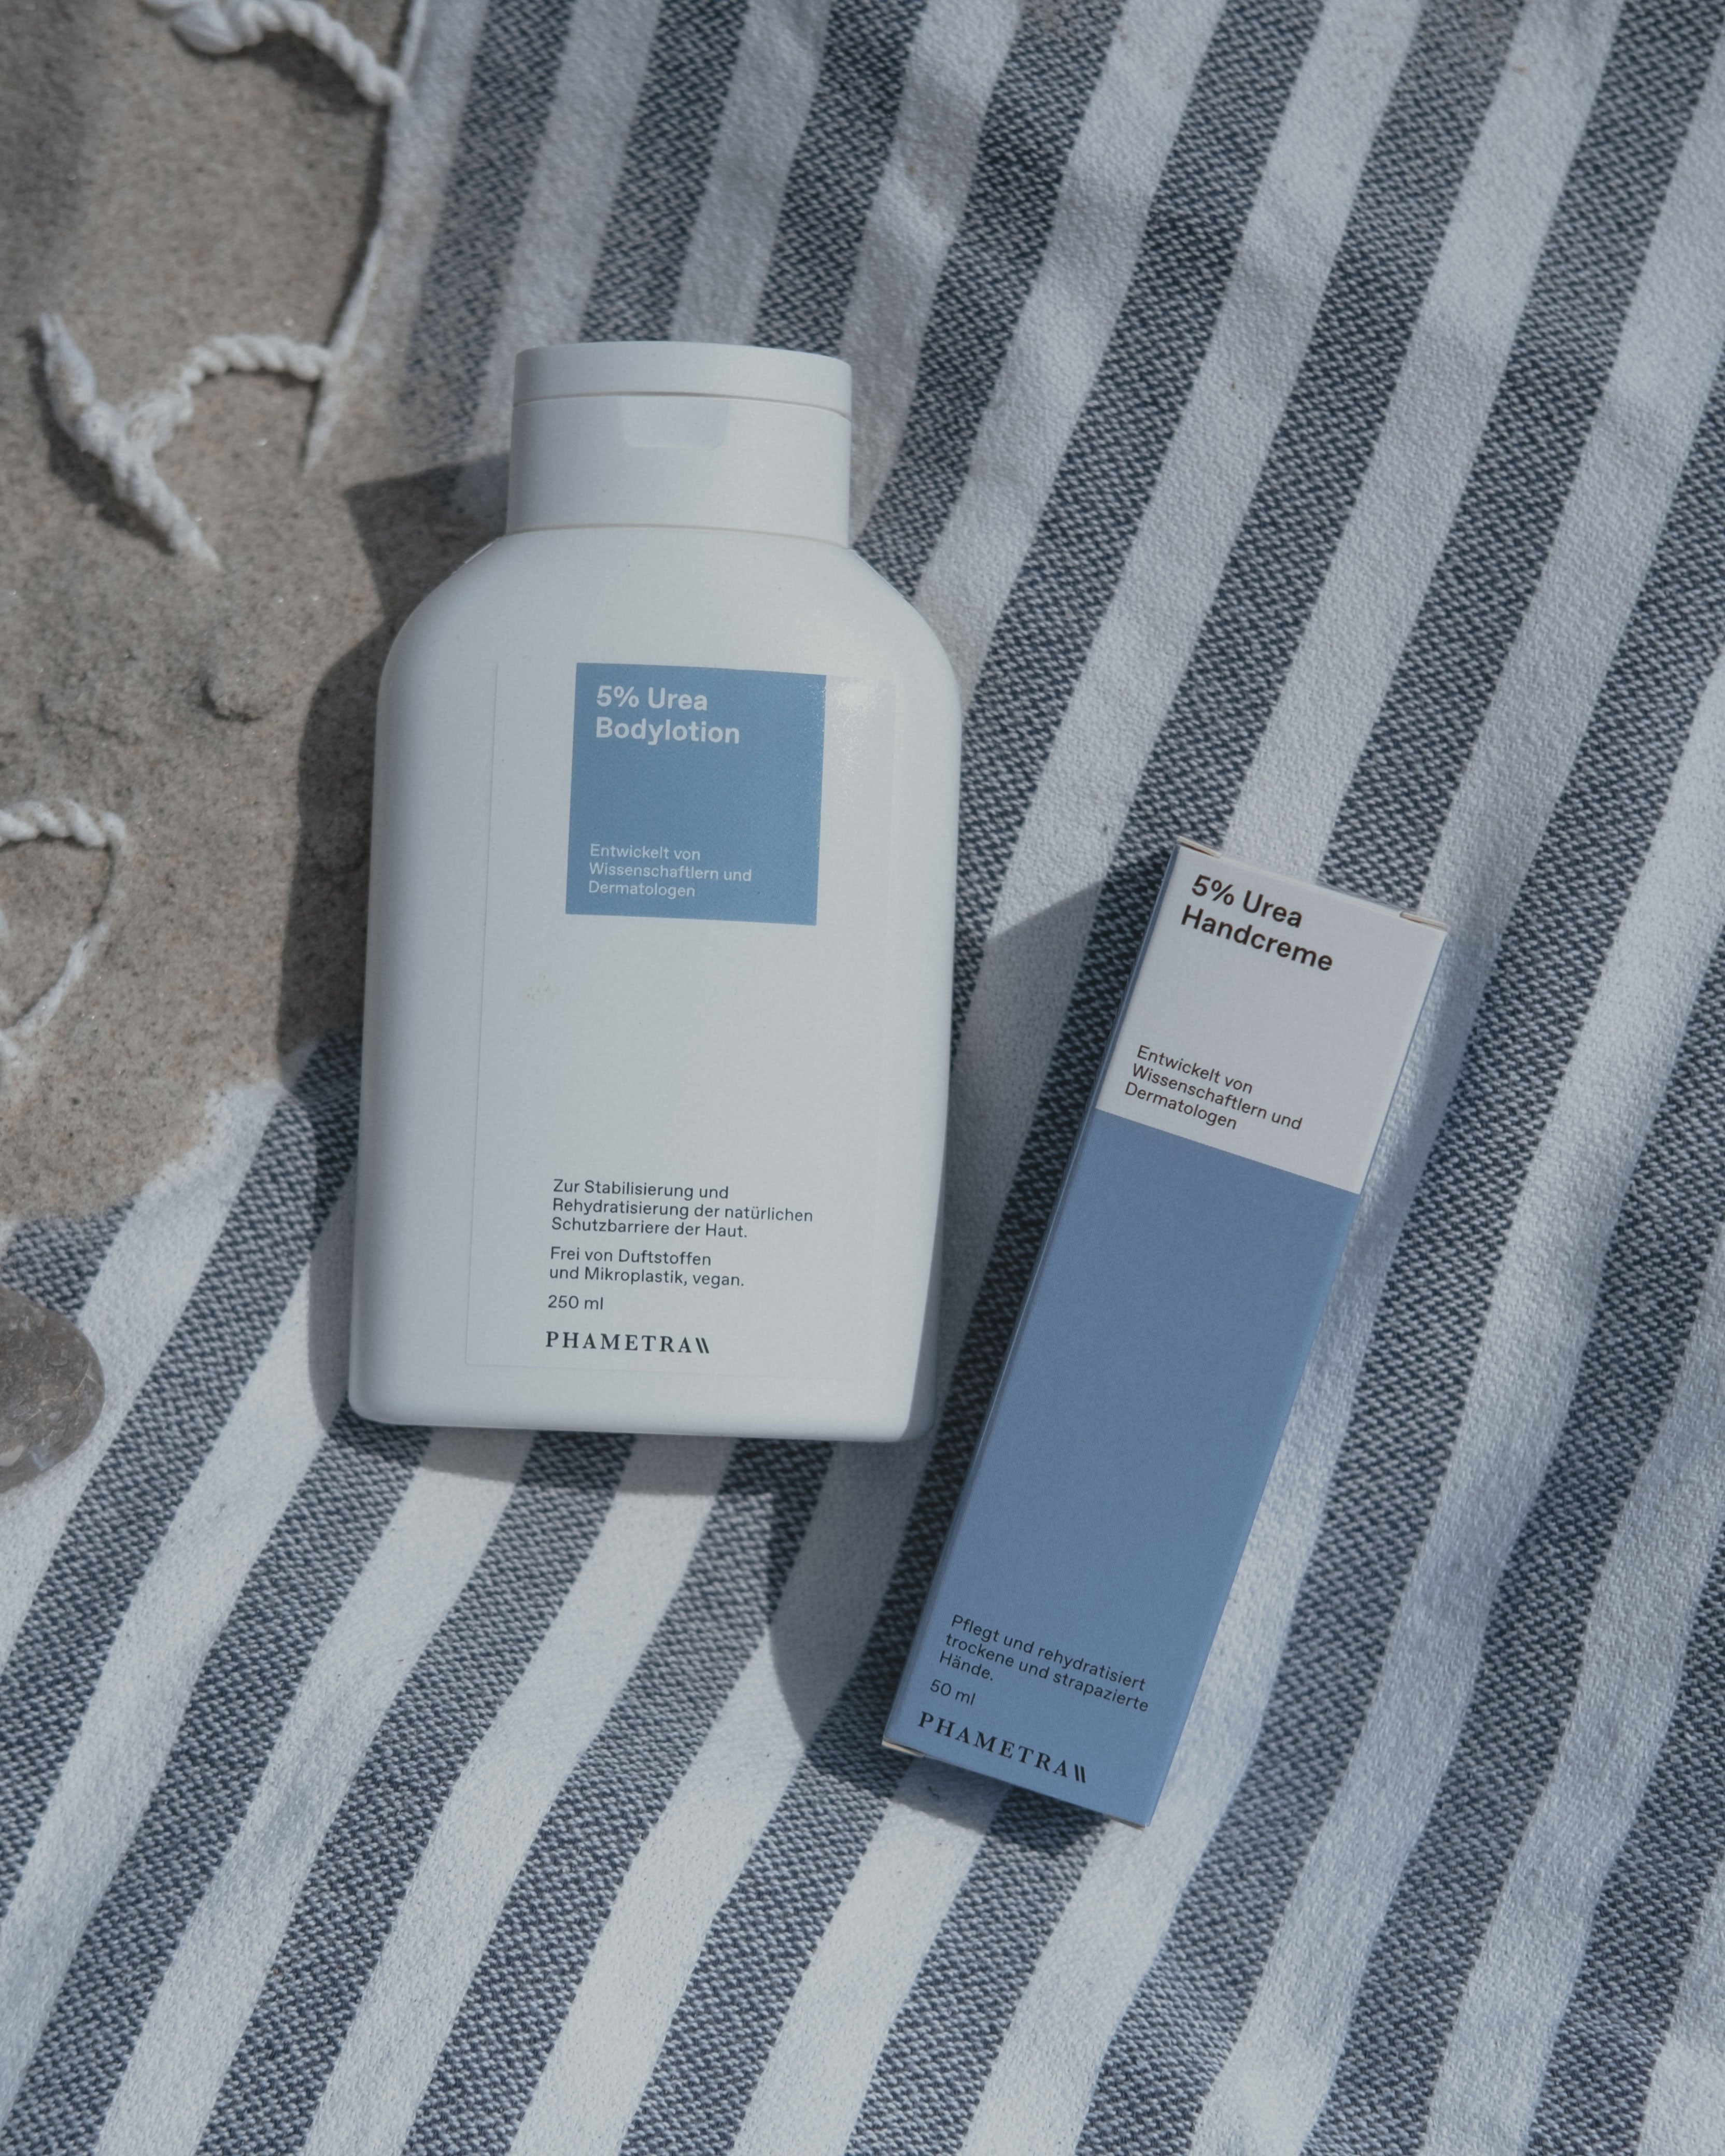 Die weiße Verpackung der Phametra 5% Urea-Bodylotion sowie die blau-weiße Umverpackung der 5% Urea Handcreme von Phametra liegen auf einem blau-weiß gestreifem Handtuch im Sand